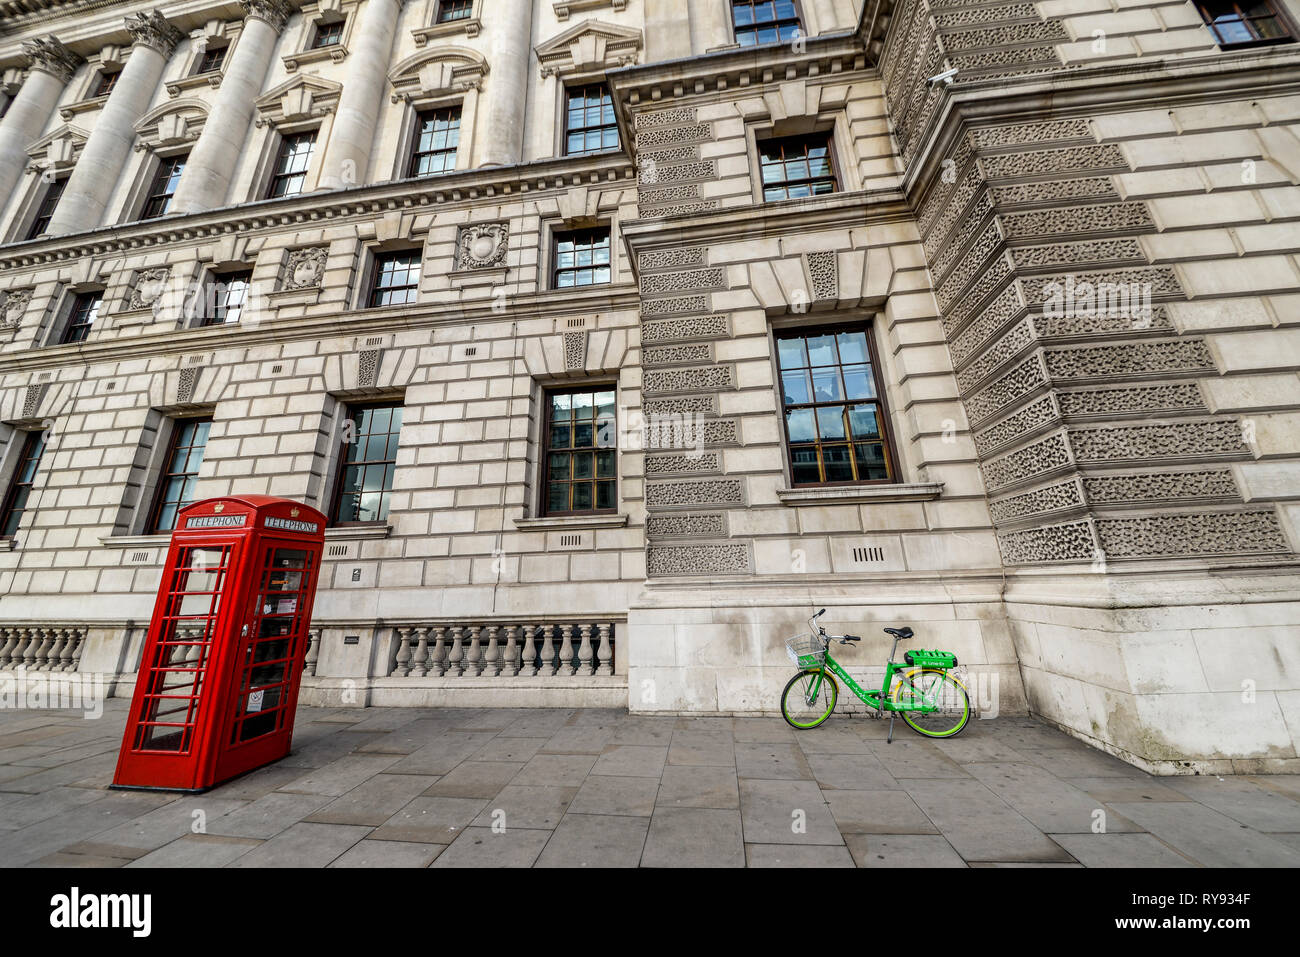 Escena londinense, caja del teléfono rojo y verde lima e alquiler eléctrico esquema bicicleta bicicleta dejó fuera del edificio de gobierno en Whitehall, Londres, Reino Unido. Foto de stock